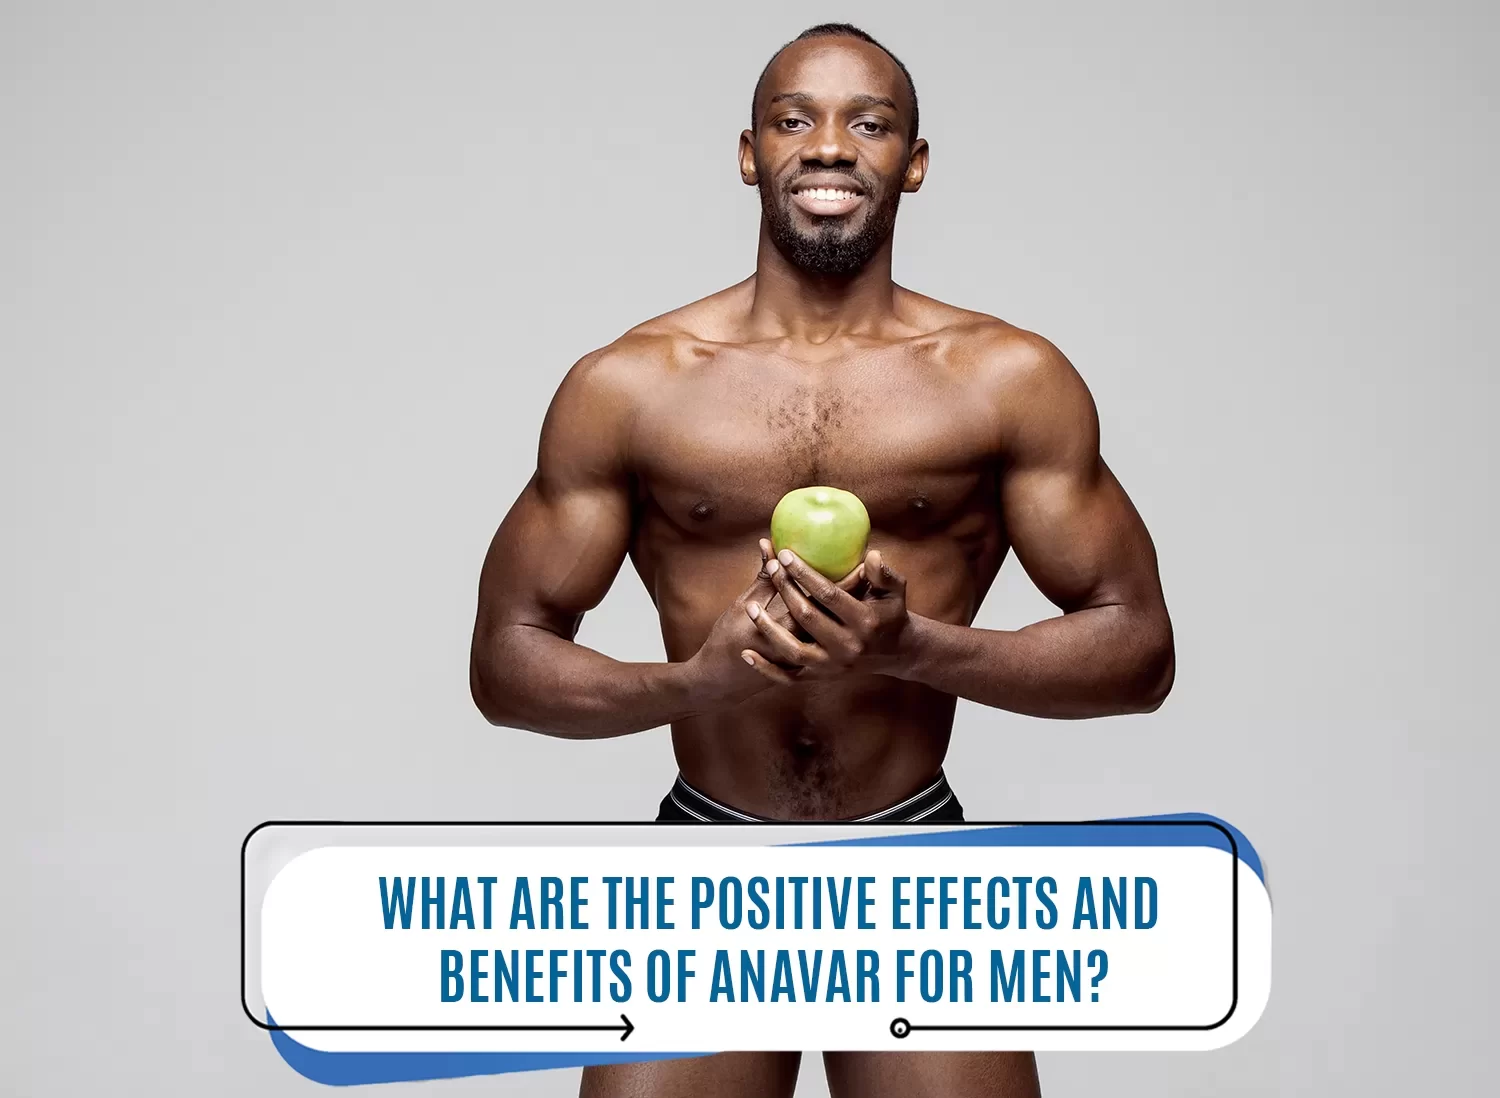 Benefits of Anavar for men